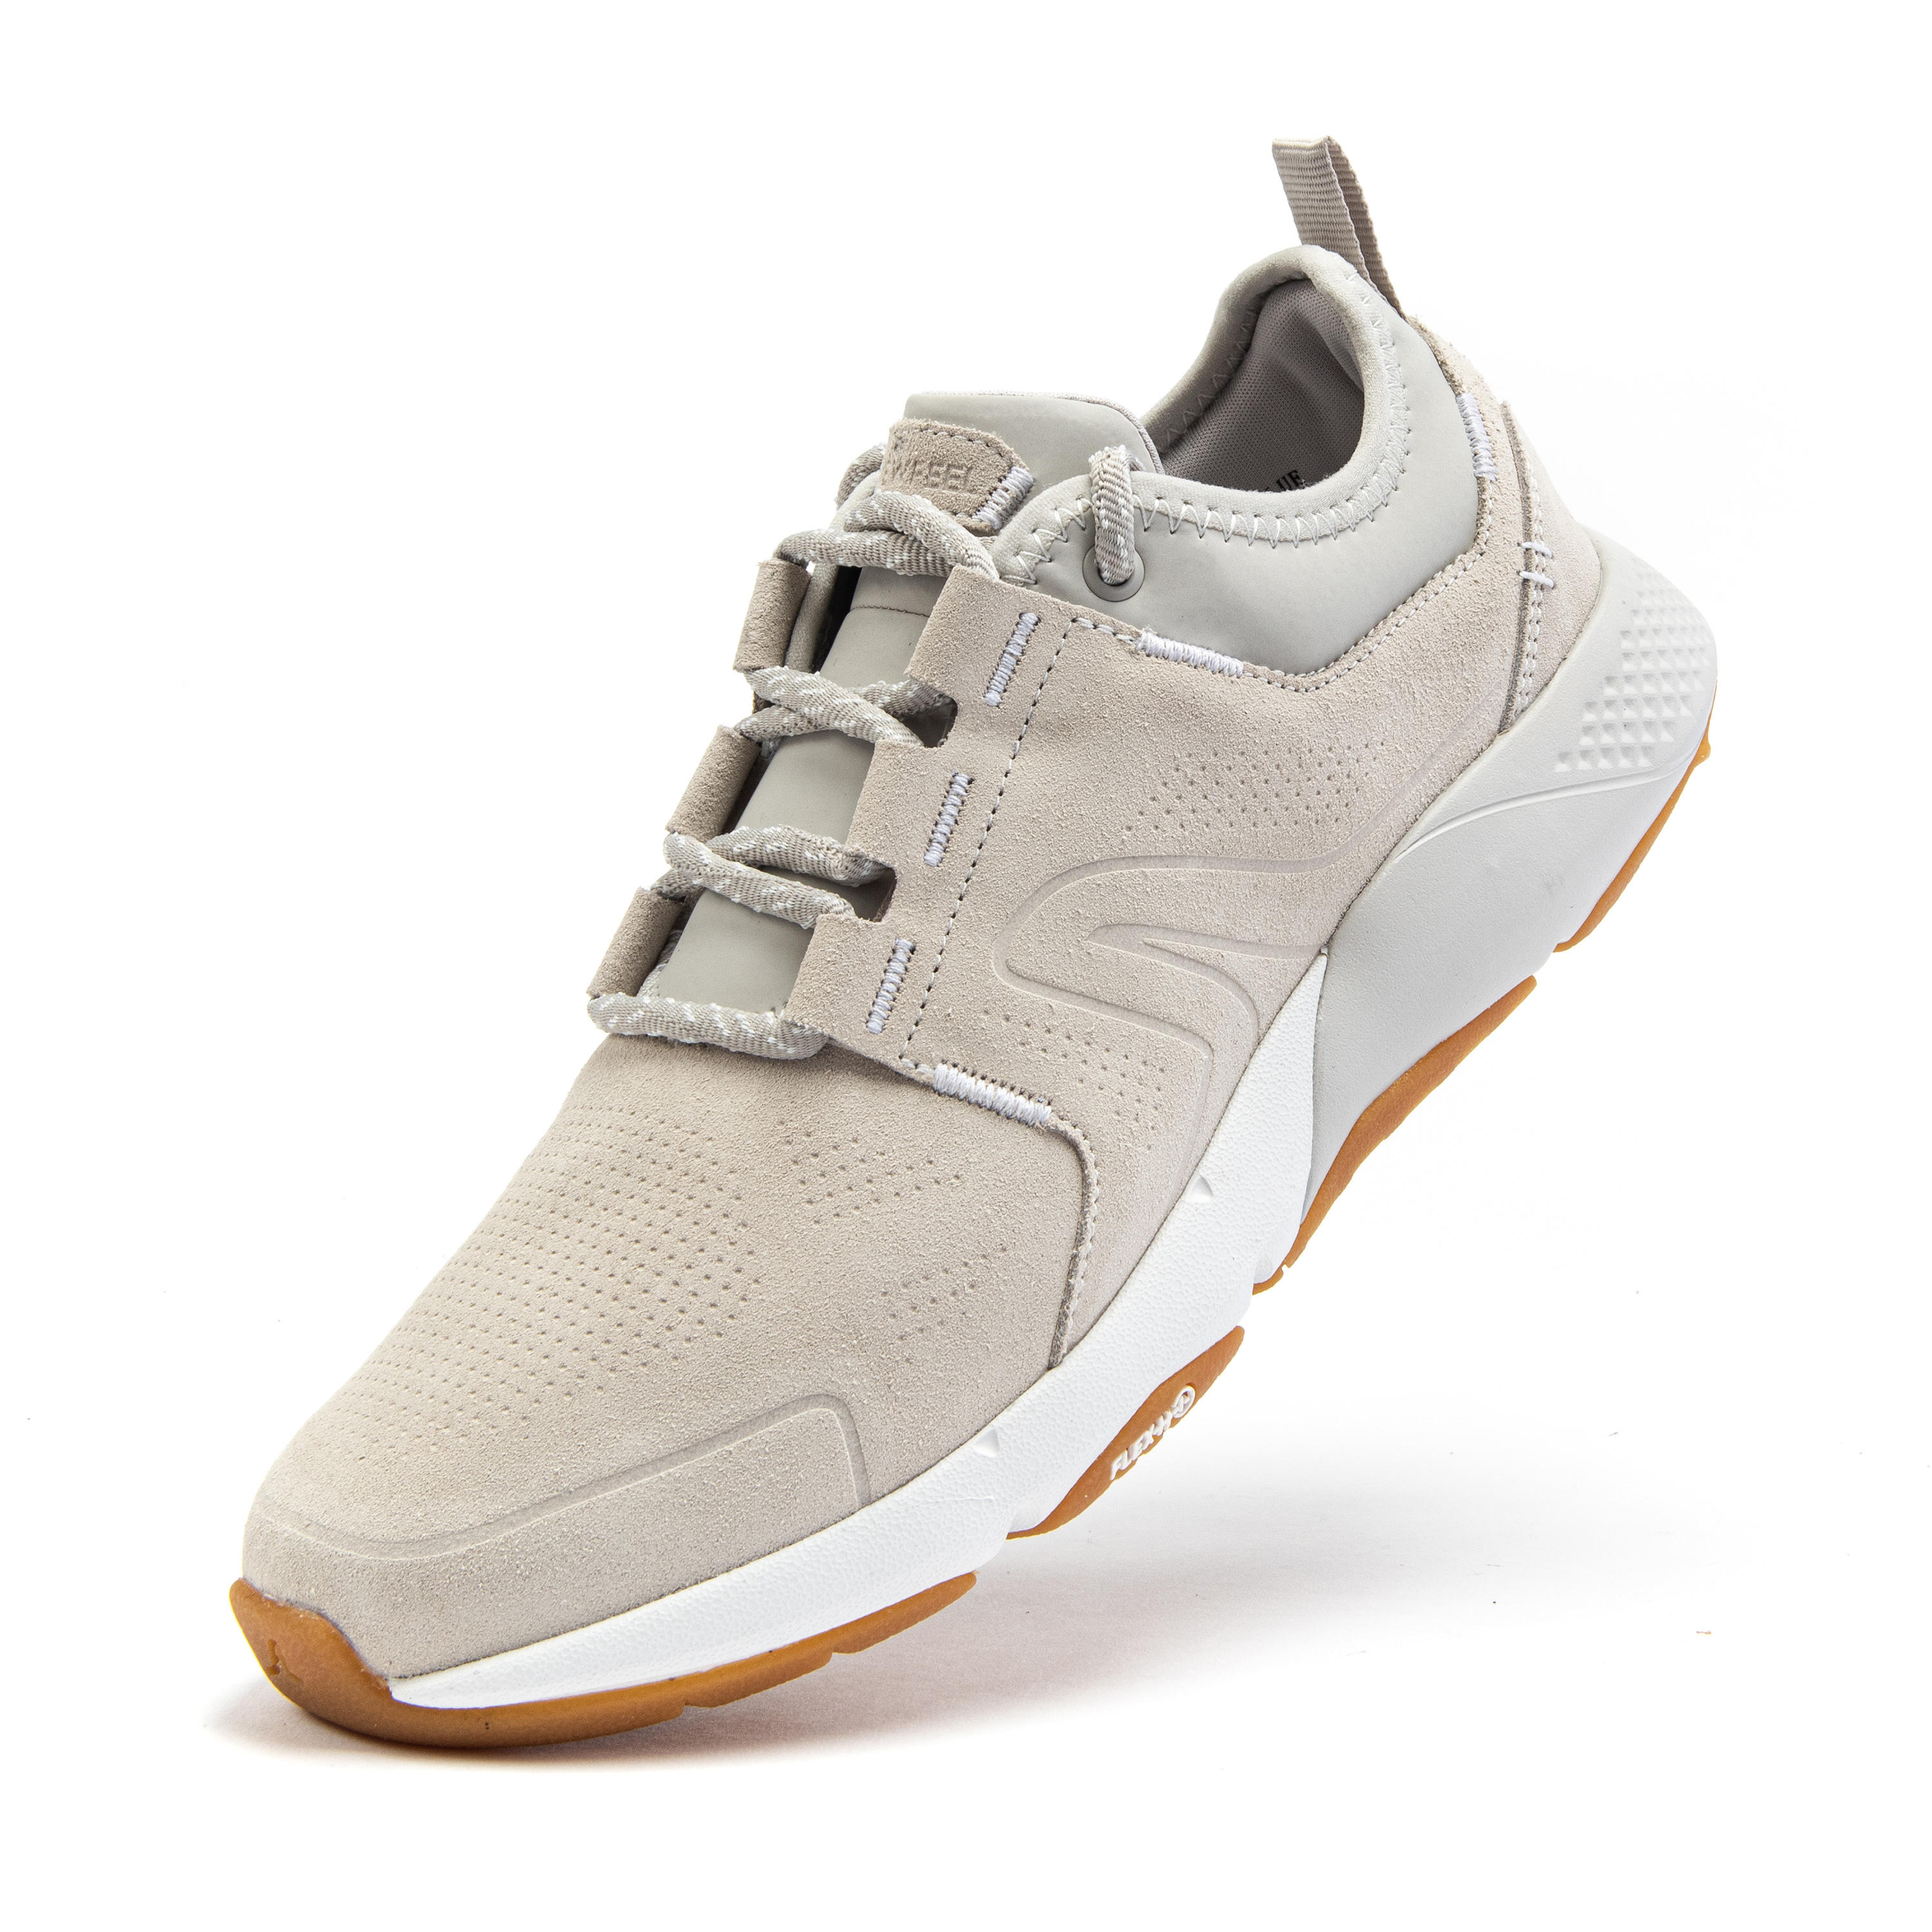 Women's City Walking Shoes Actiwalk Comfort Leather - beige 18/32